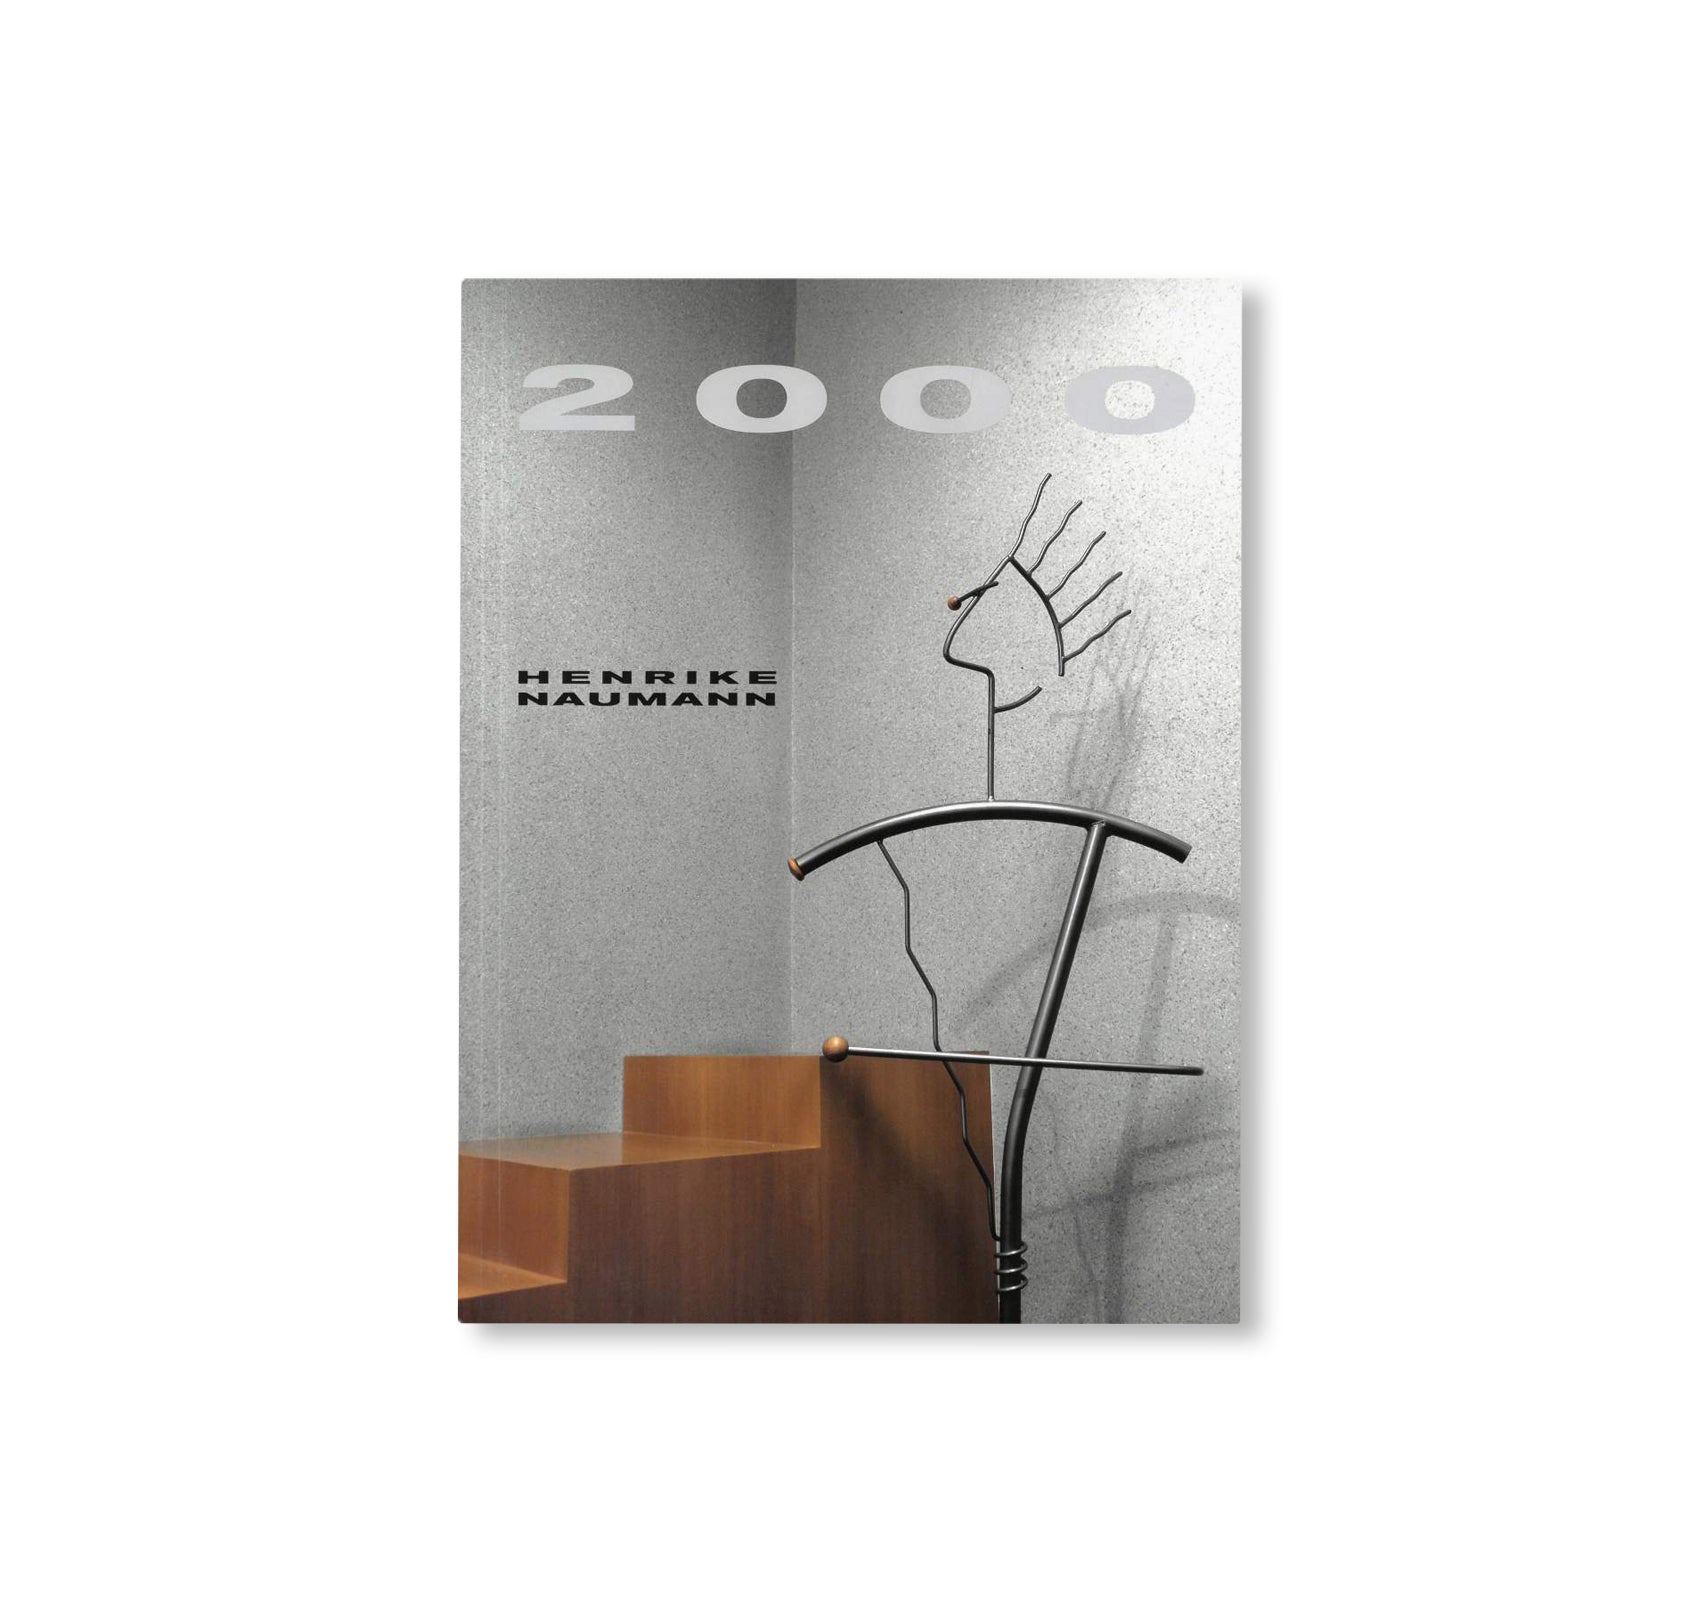 2000 by Henrike Naumann